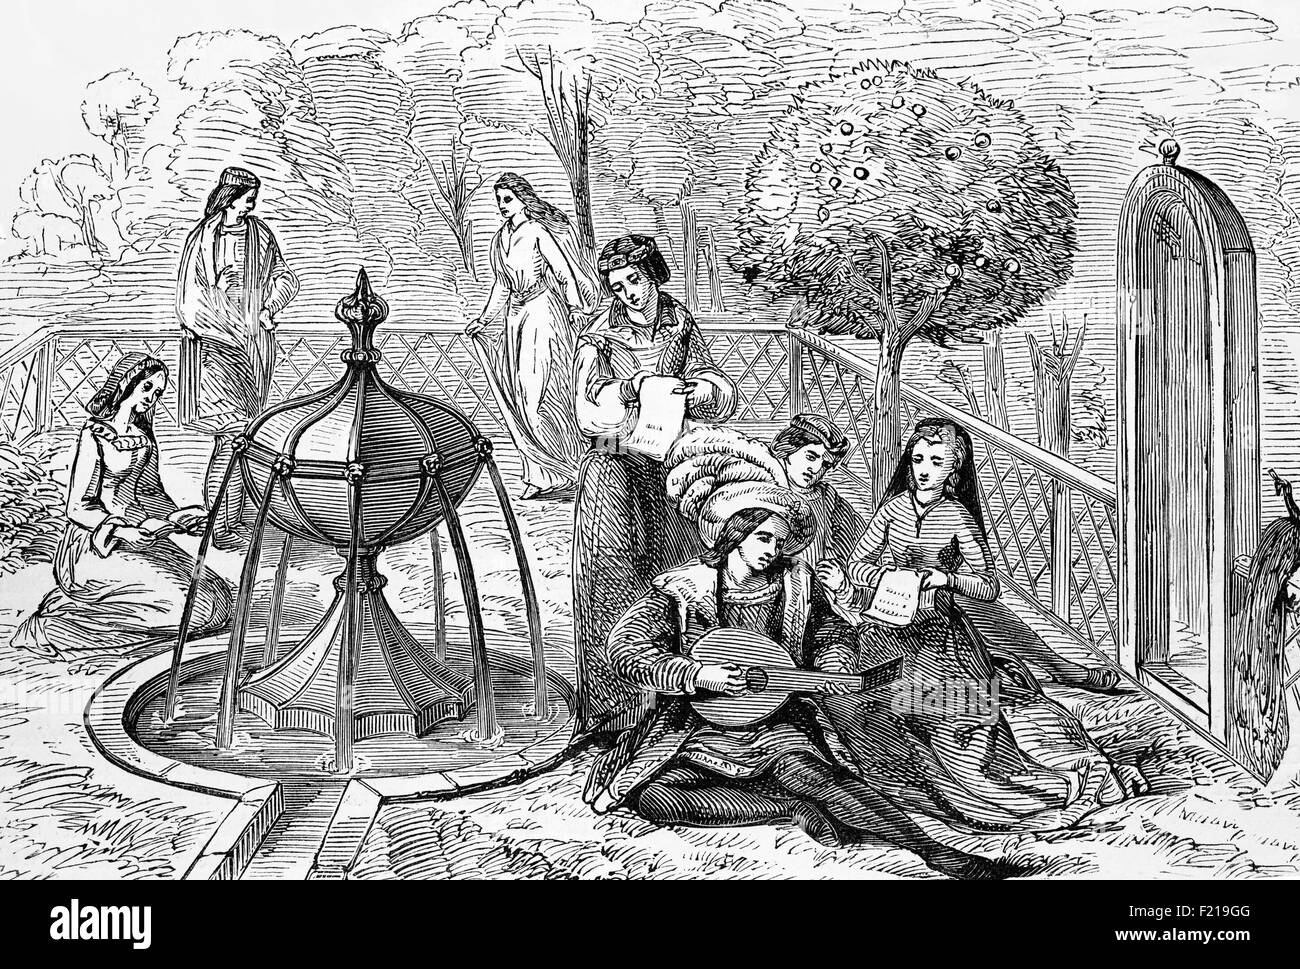 Die englische Aristokratie des 15th. Jahrhunderts amüsiert sich in einem typischen Garten mit Gesang und Musik, die von einem Lautenspieler geliefert wird. Stockfoto